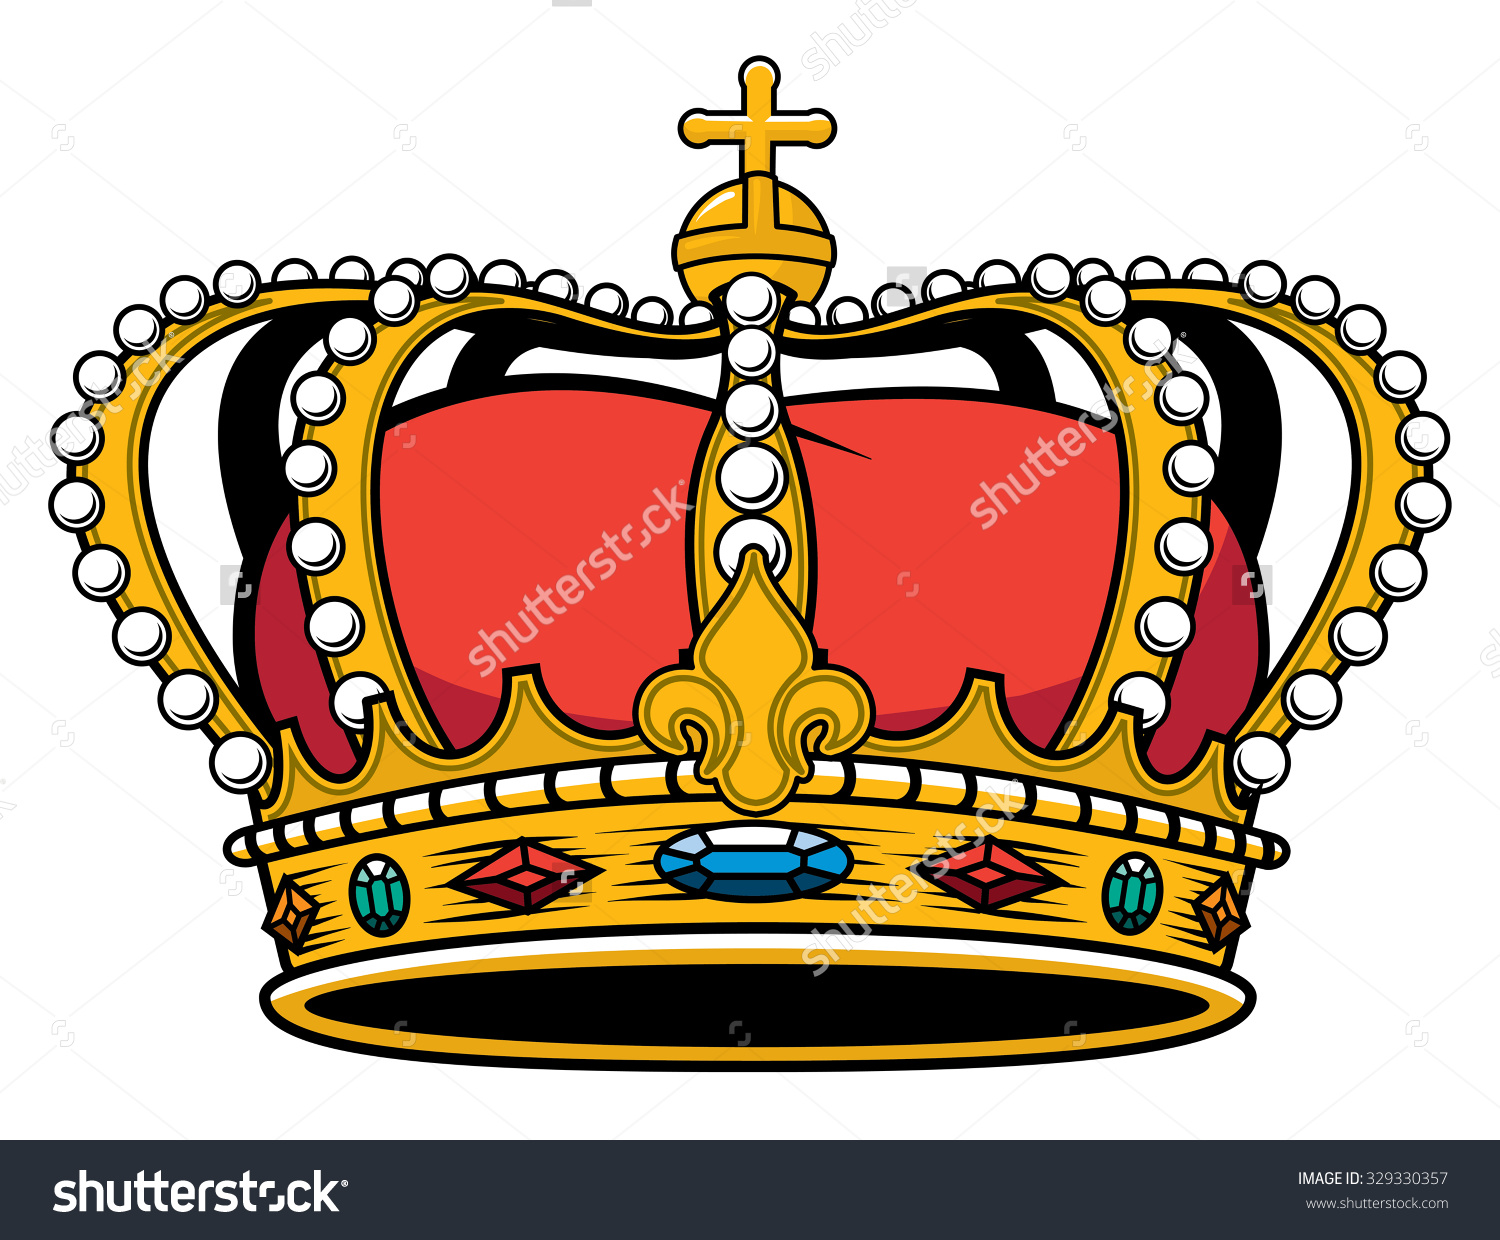 Medieval Crown Drawing at GetDrawings | Free download